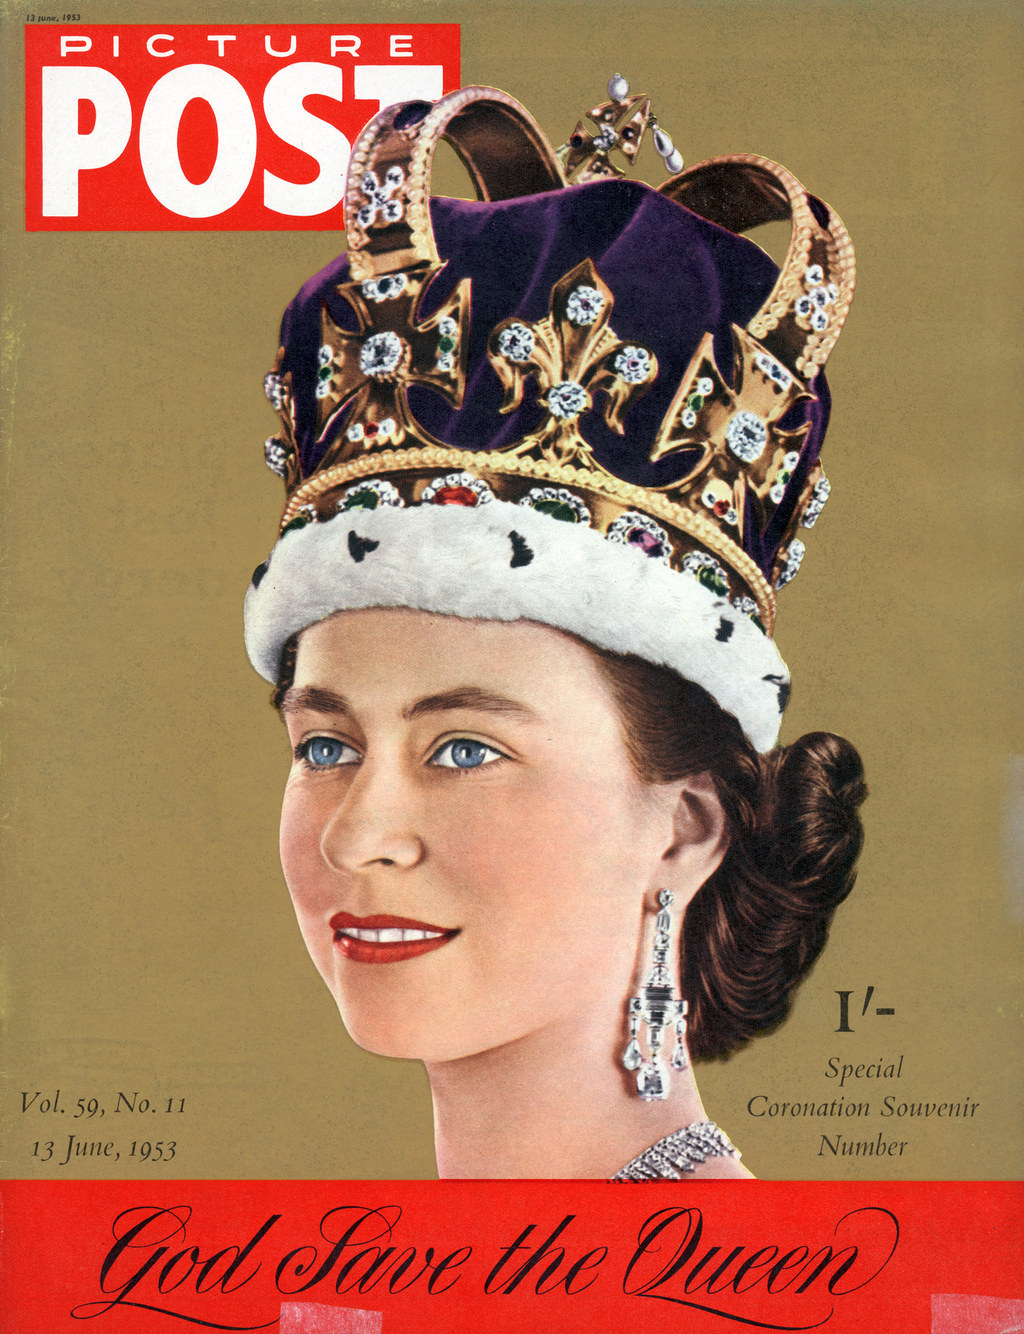 Queen Elizabeth Ii Turns 90 A Life In Pictures